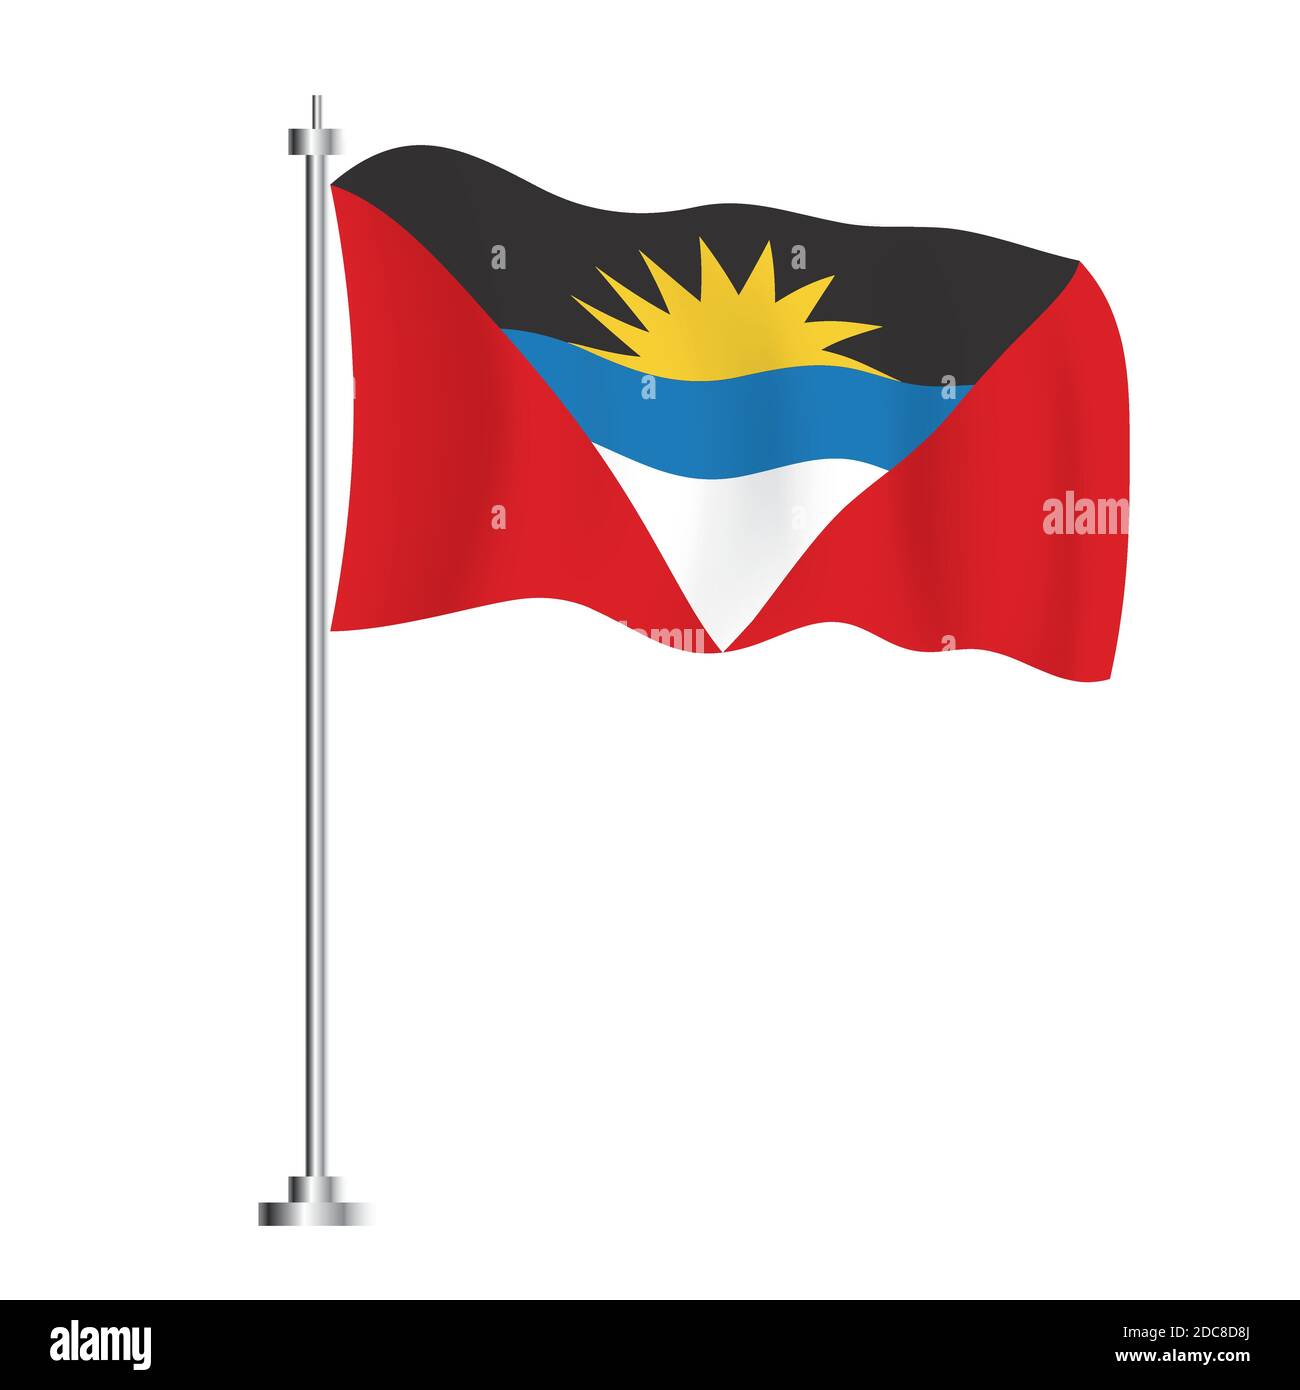 Drapeau d'Antigua-et-Barbuda. Drapeau vague isolé du pays d'Antigua-et-Barbuda. Illustration vectorielle. Jour de l'indépendance. Illustration de Vecteur